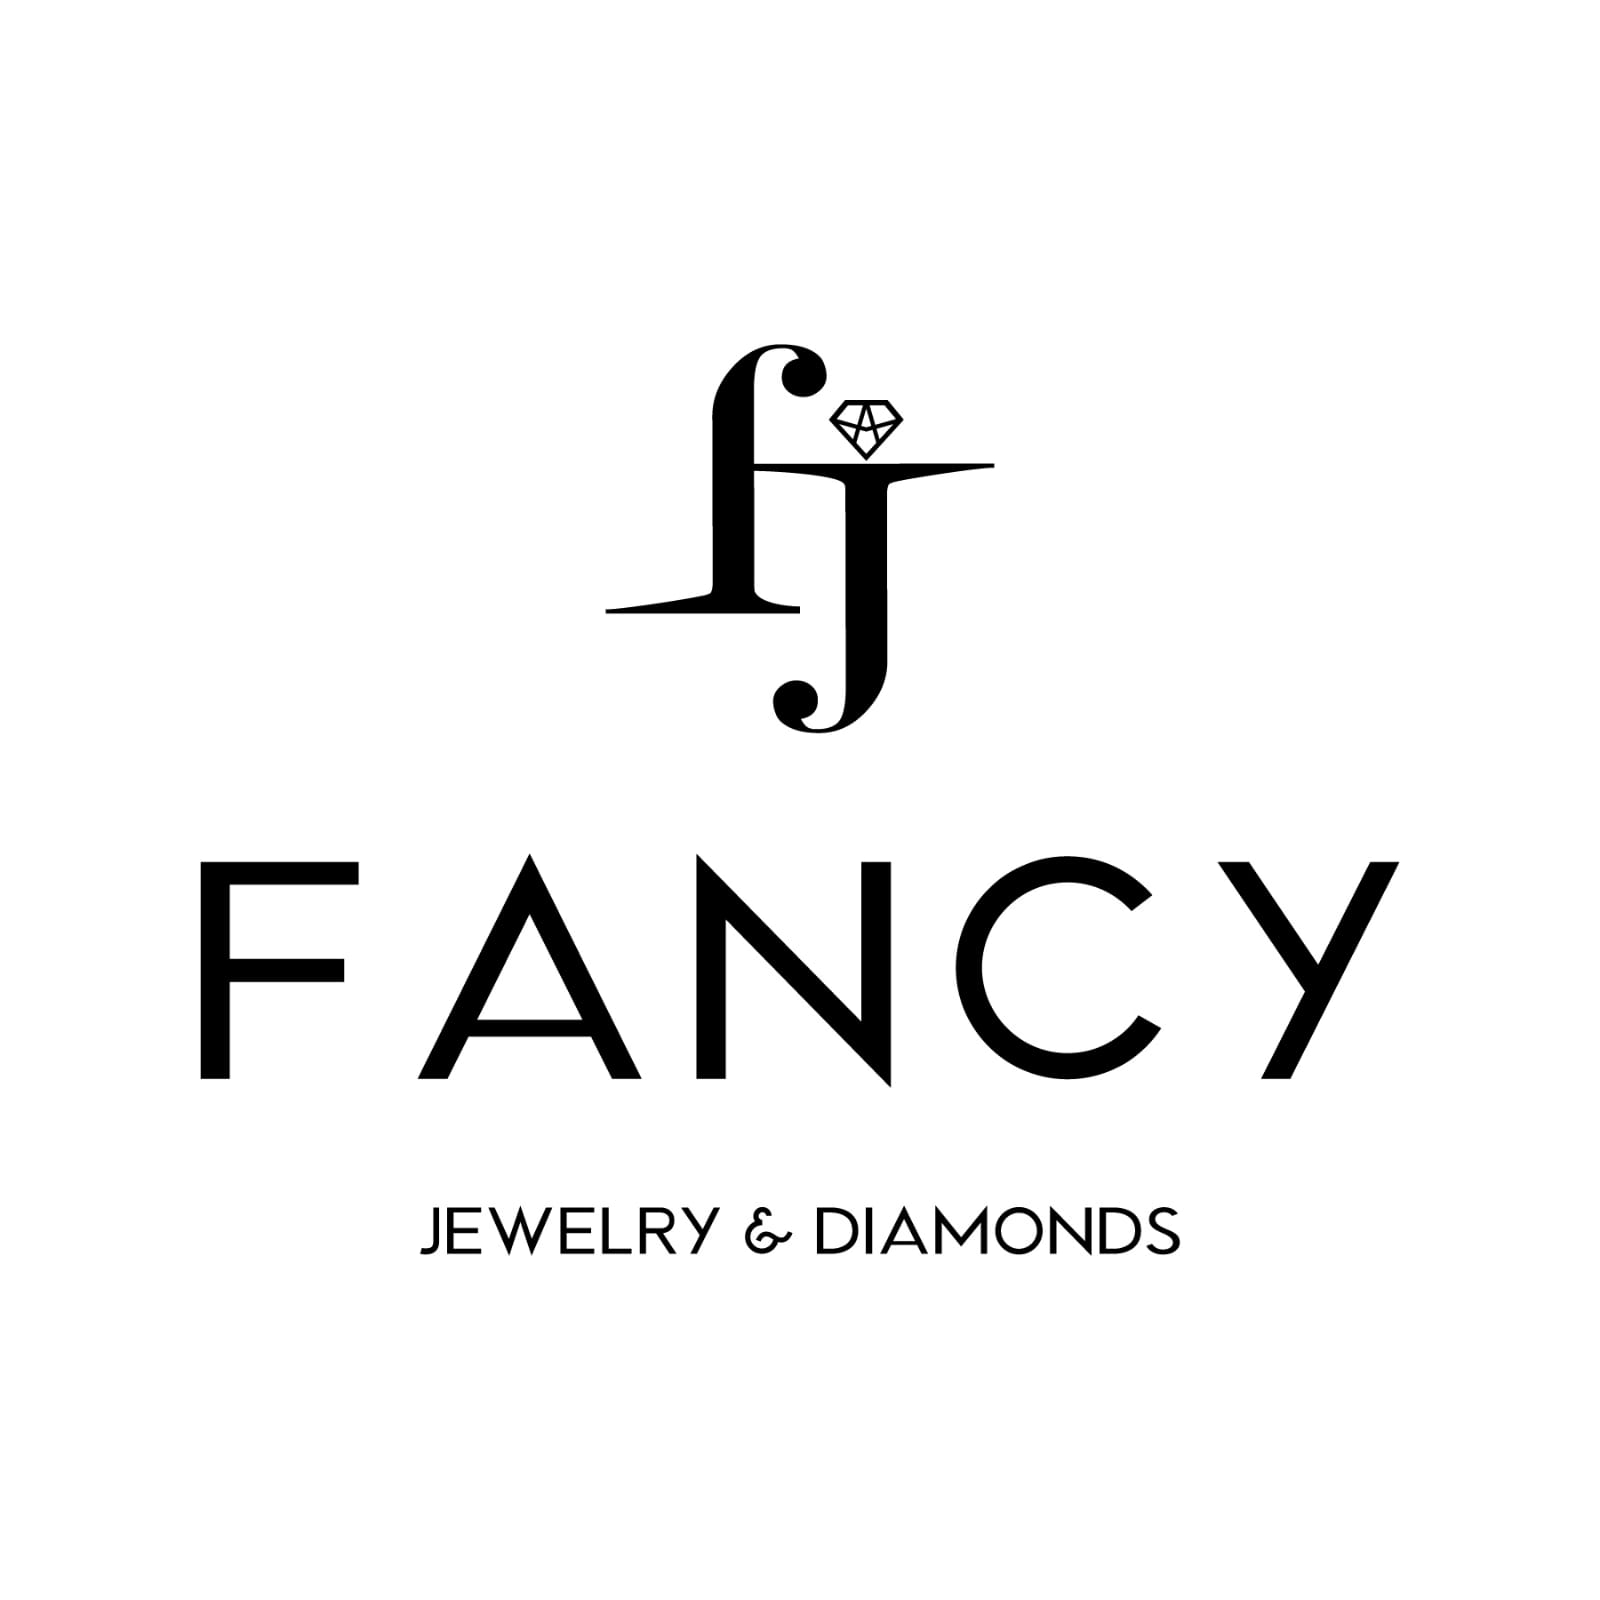 Fancy jewelry&diamonds